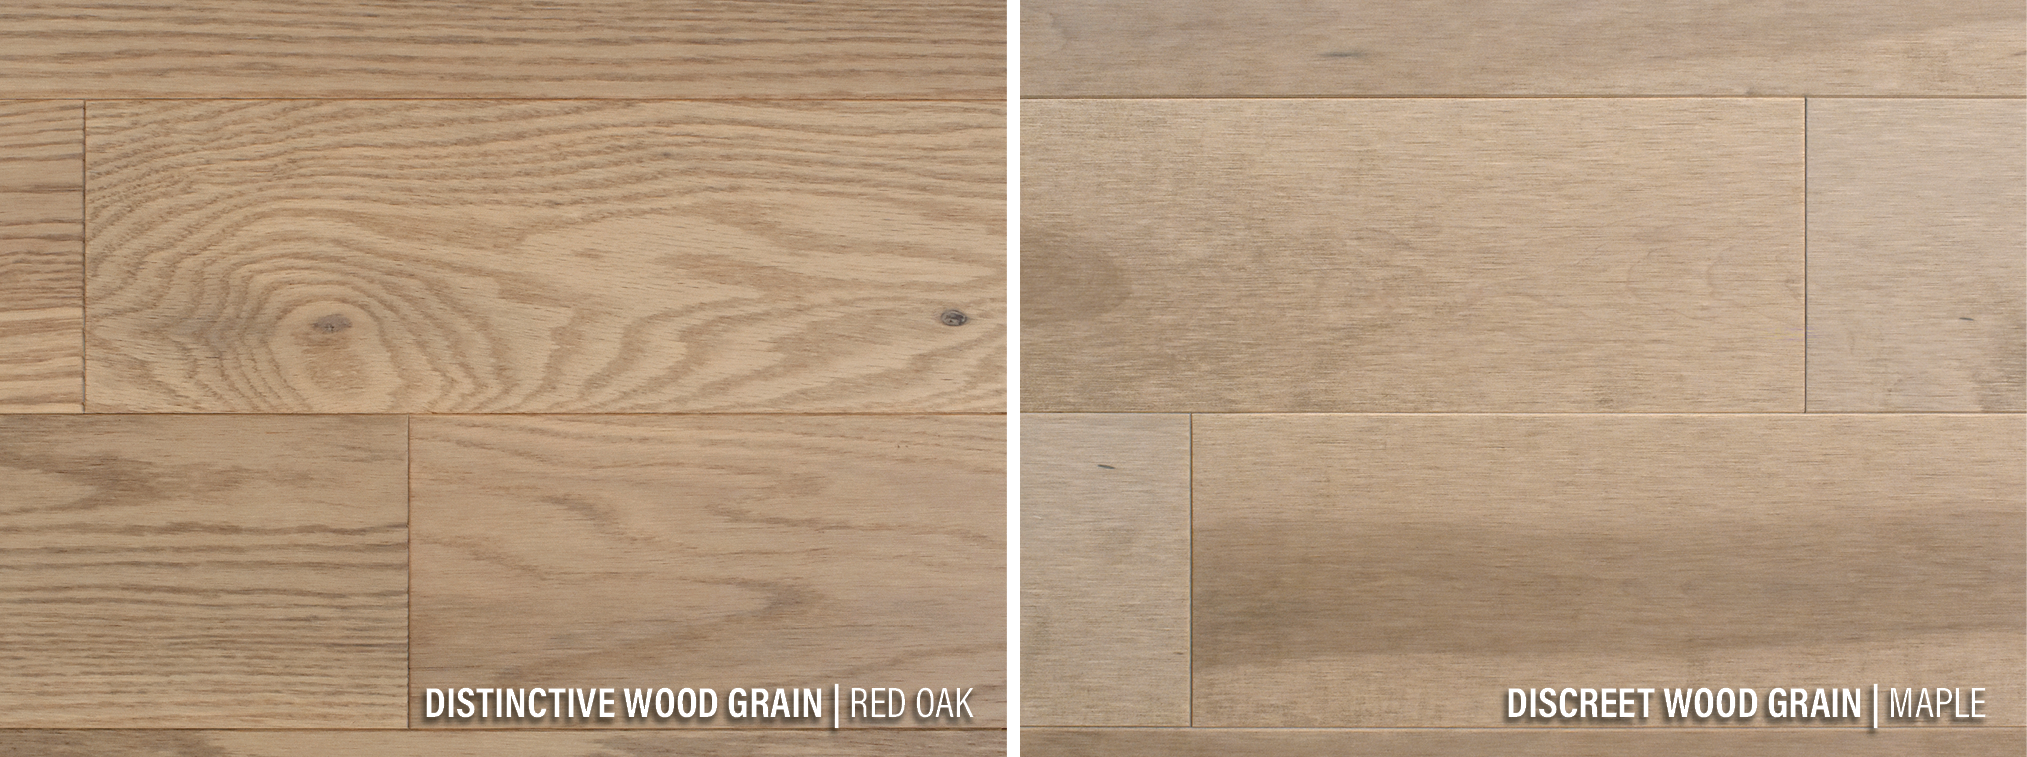 Wood Species | Grain | PG Flooring